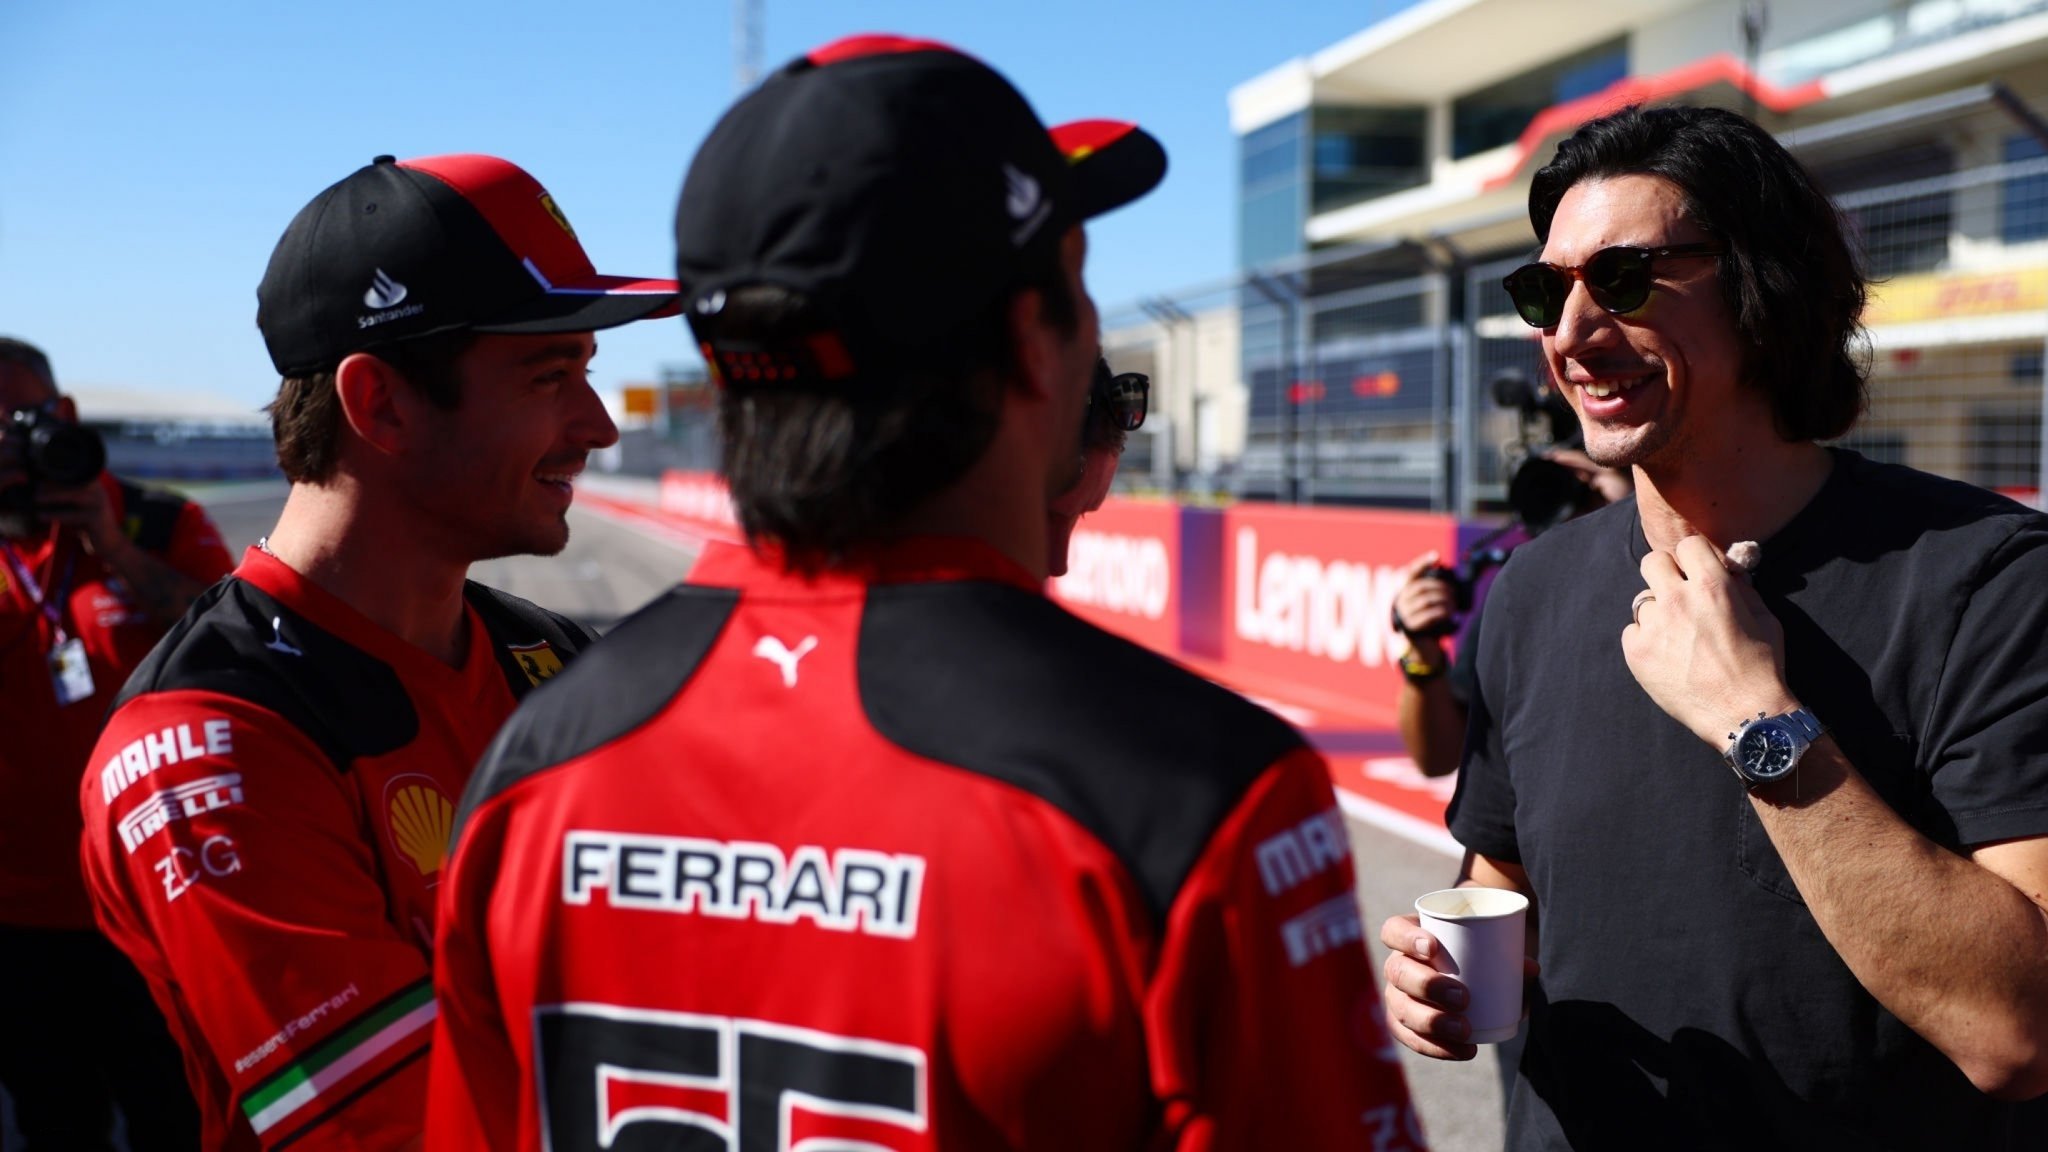 Charles Leclerc and Carlos Sainz meeting Adam Driver and Michael Mann